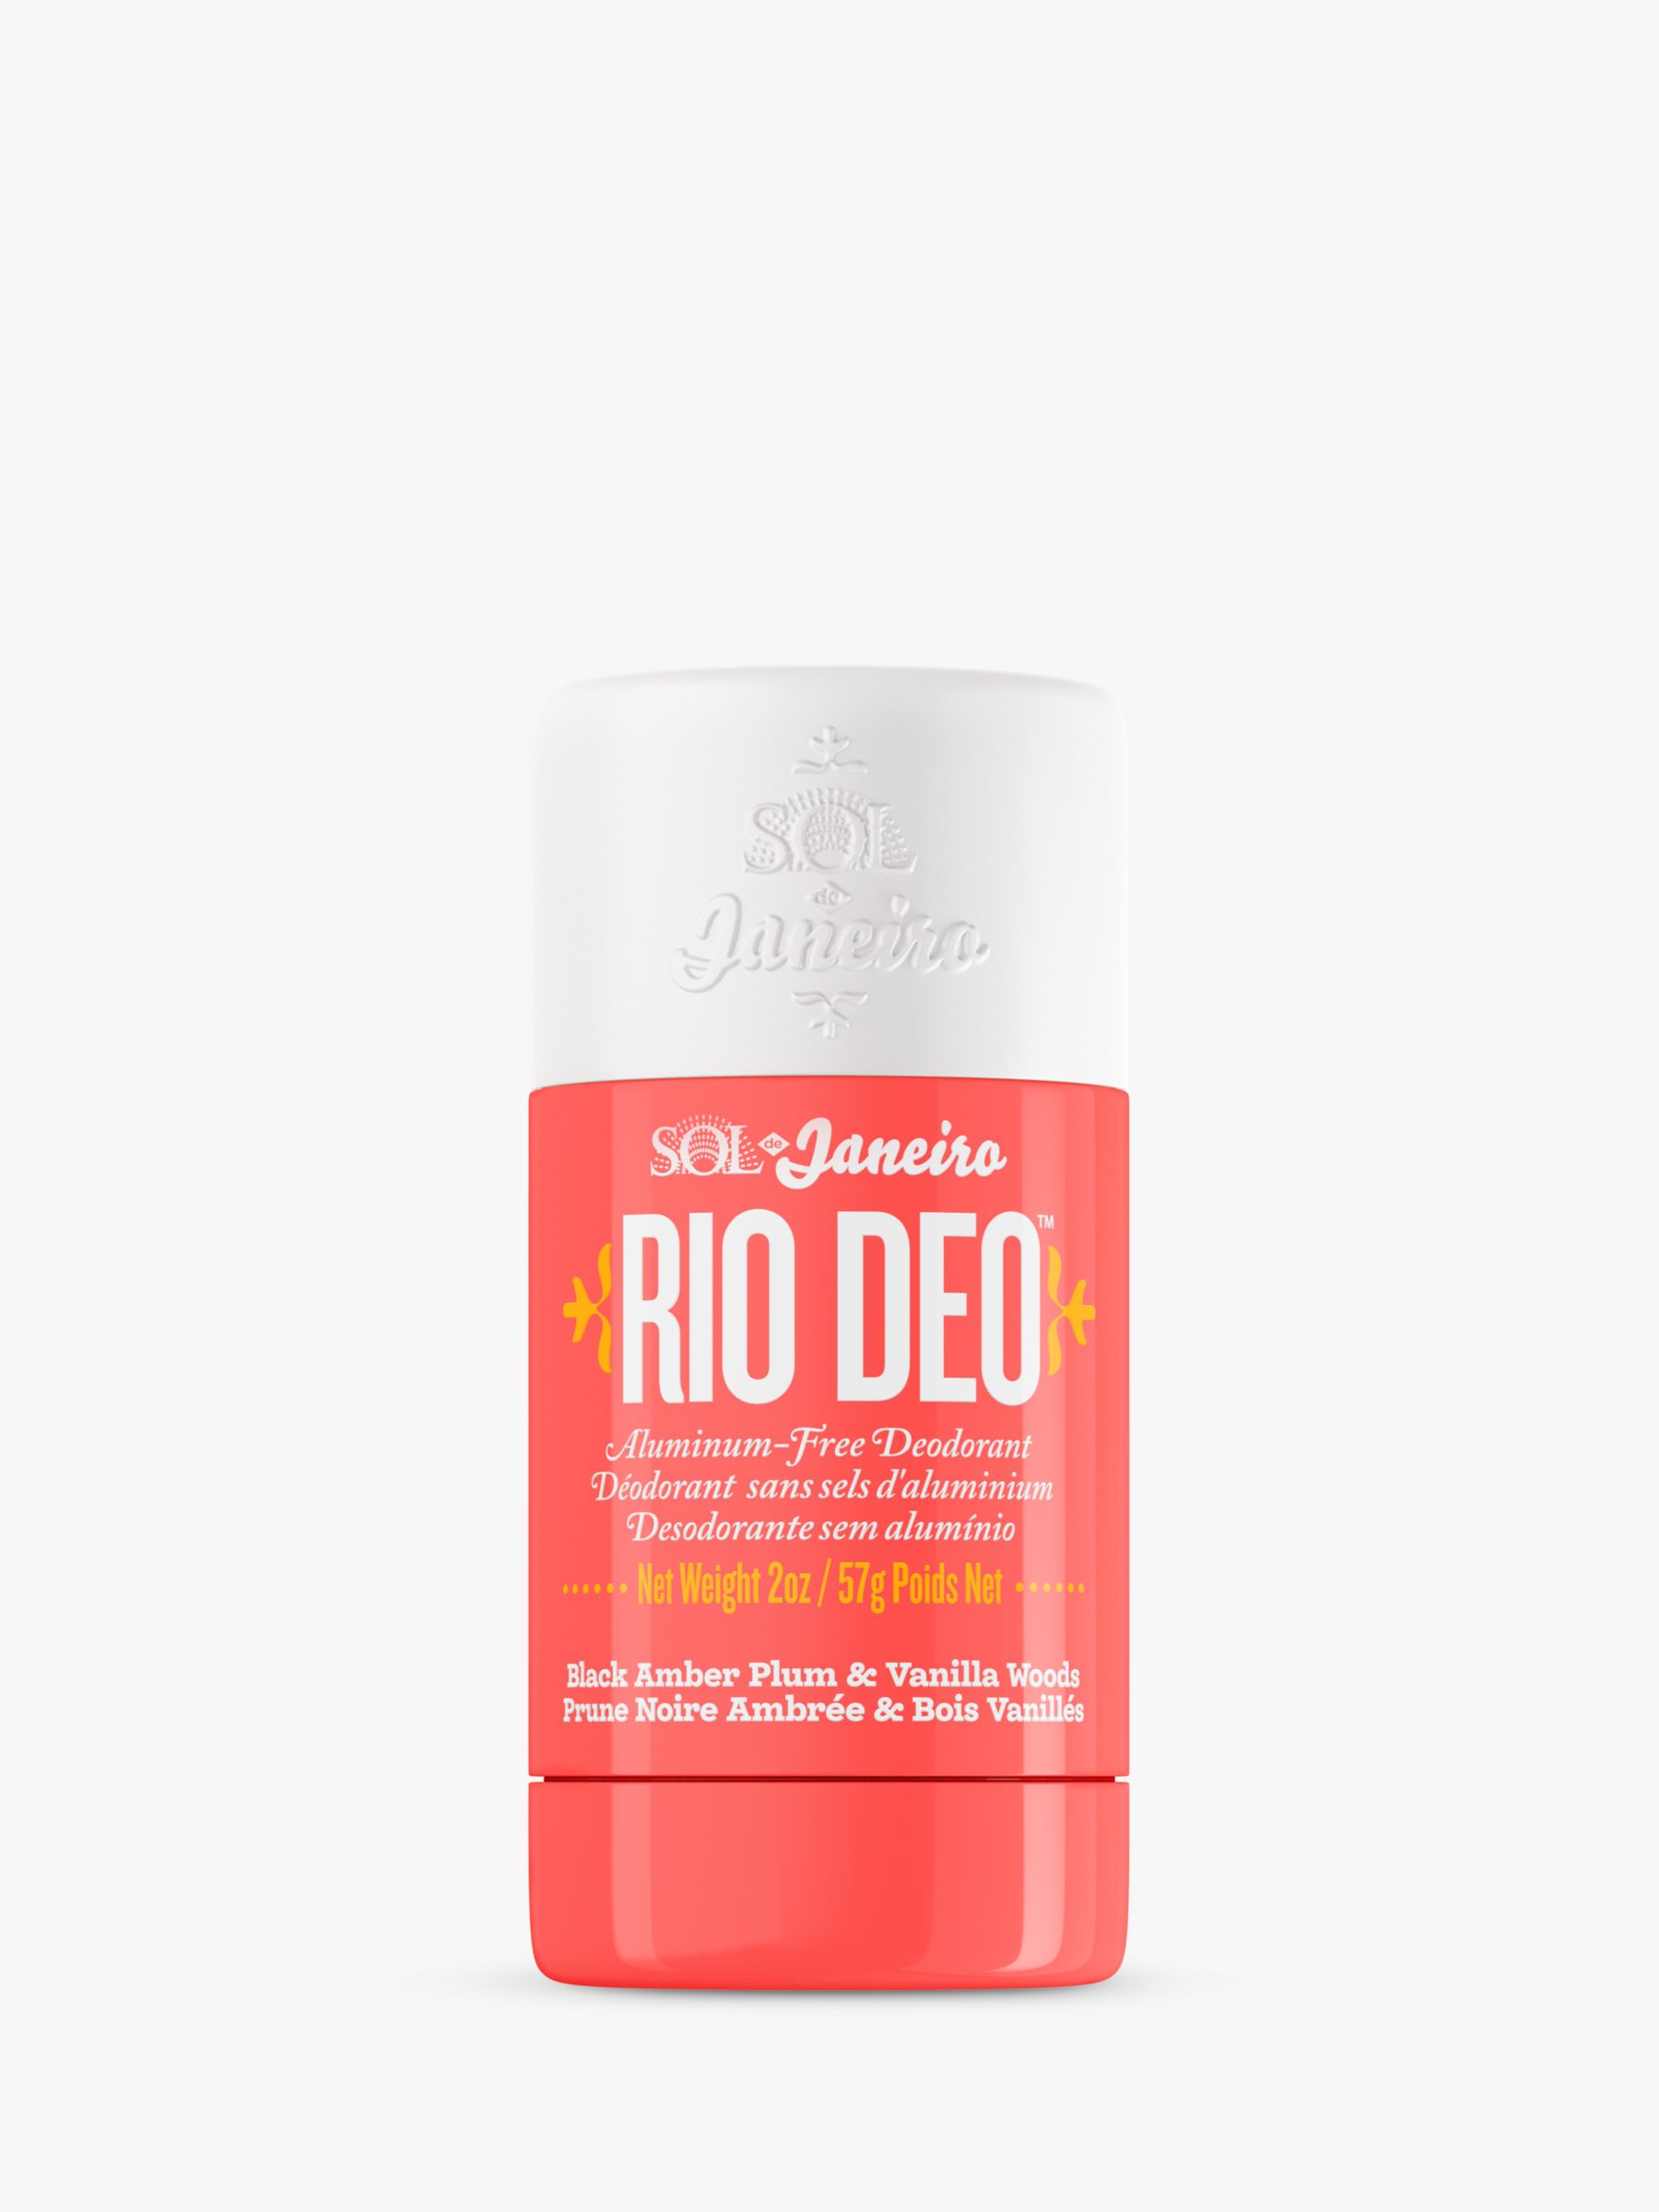 Sol De Janeiro Rio Deo Aluminum-Free Deodorant Cheirosa 40, 57g 1